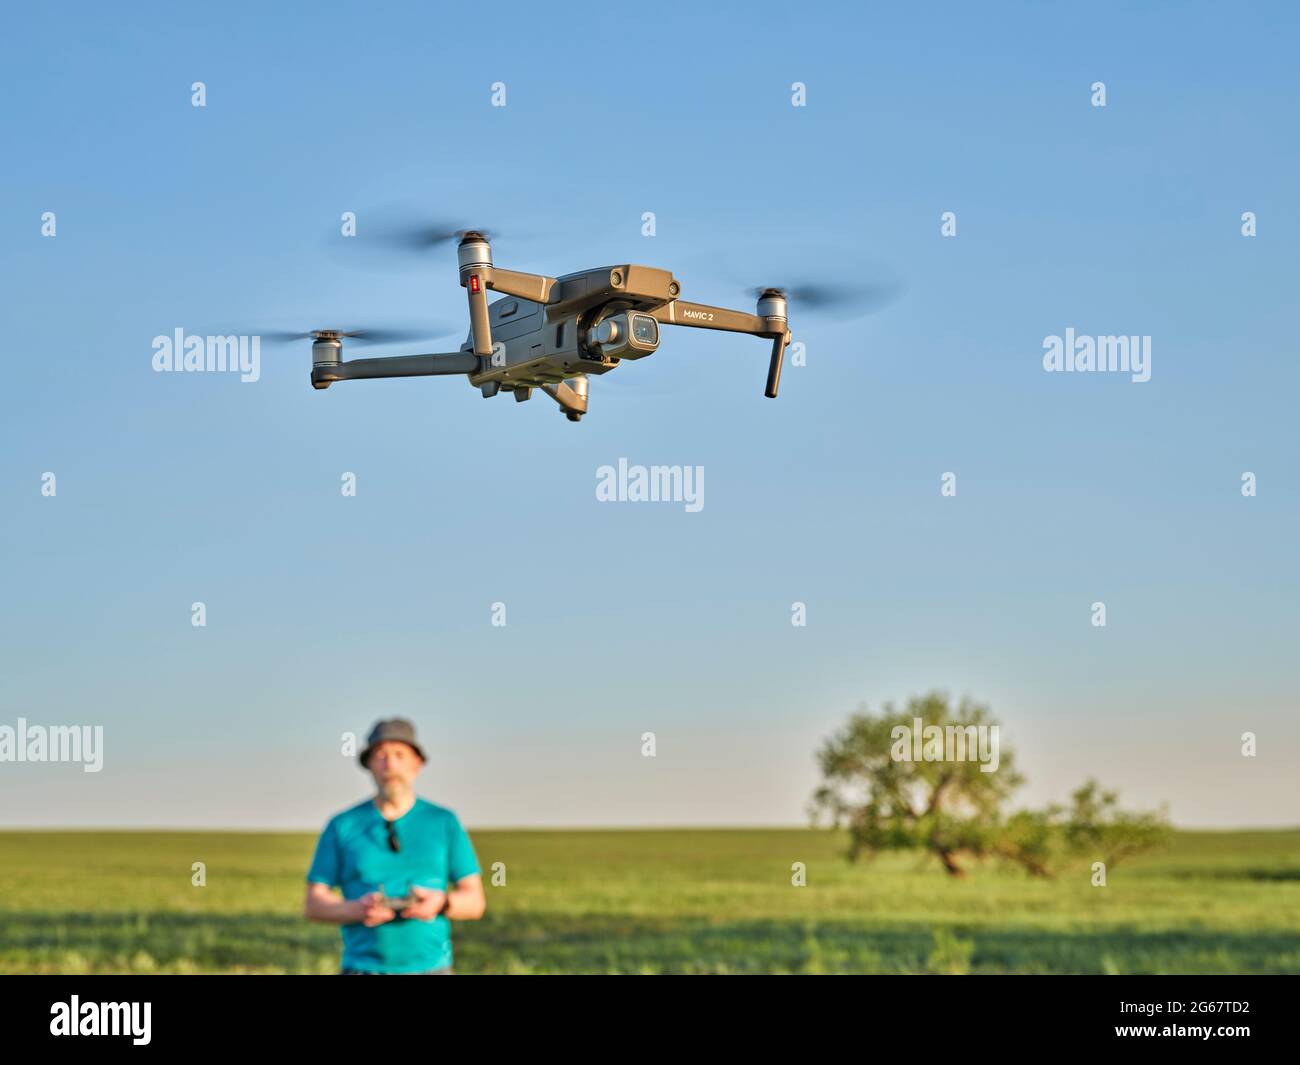 Briggsdale, CO, USA - 8. Juni 2021: Funkgesteuerte DJI Mavic 2 Pro Quadcopter Drohne fliegt über grüne Prärie mit einem männlichen Piloten im Hintergrund. Stockfoto